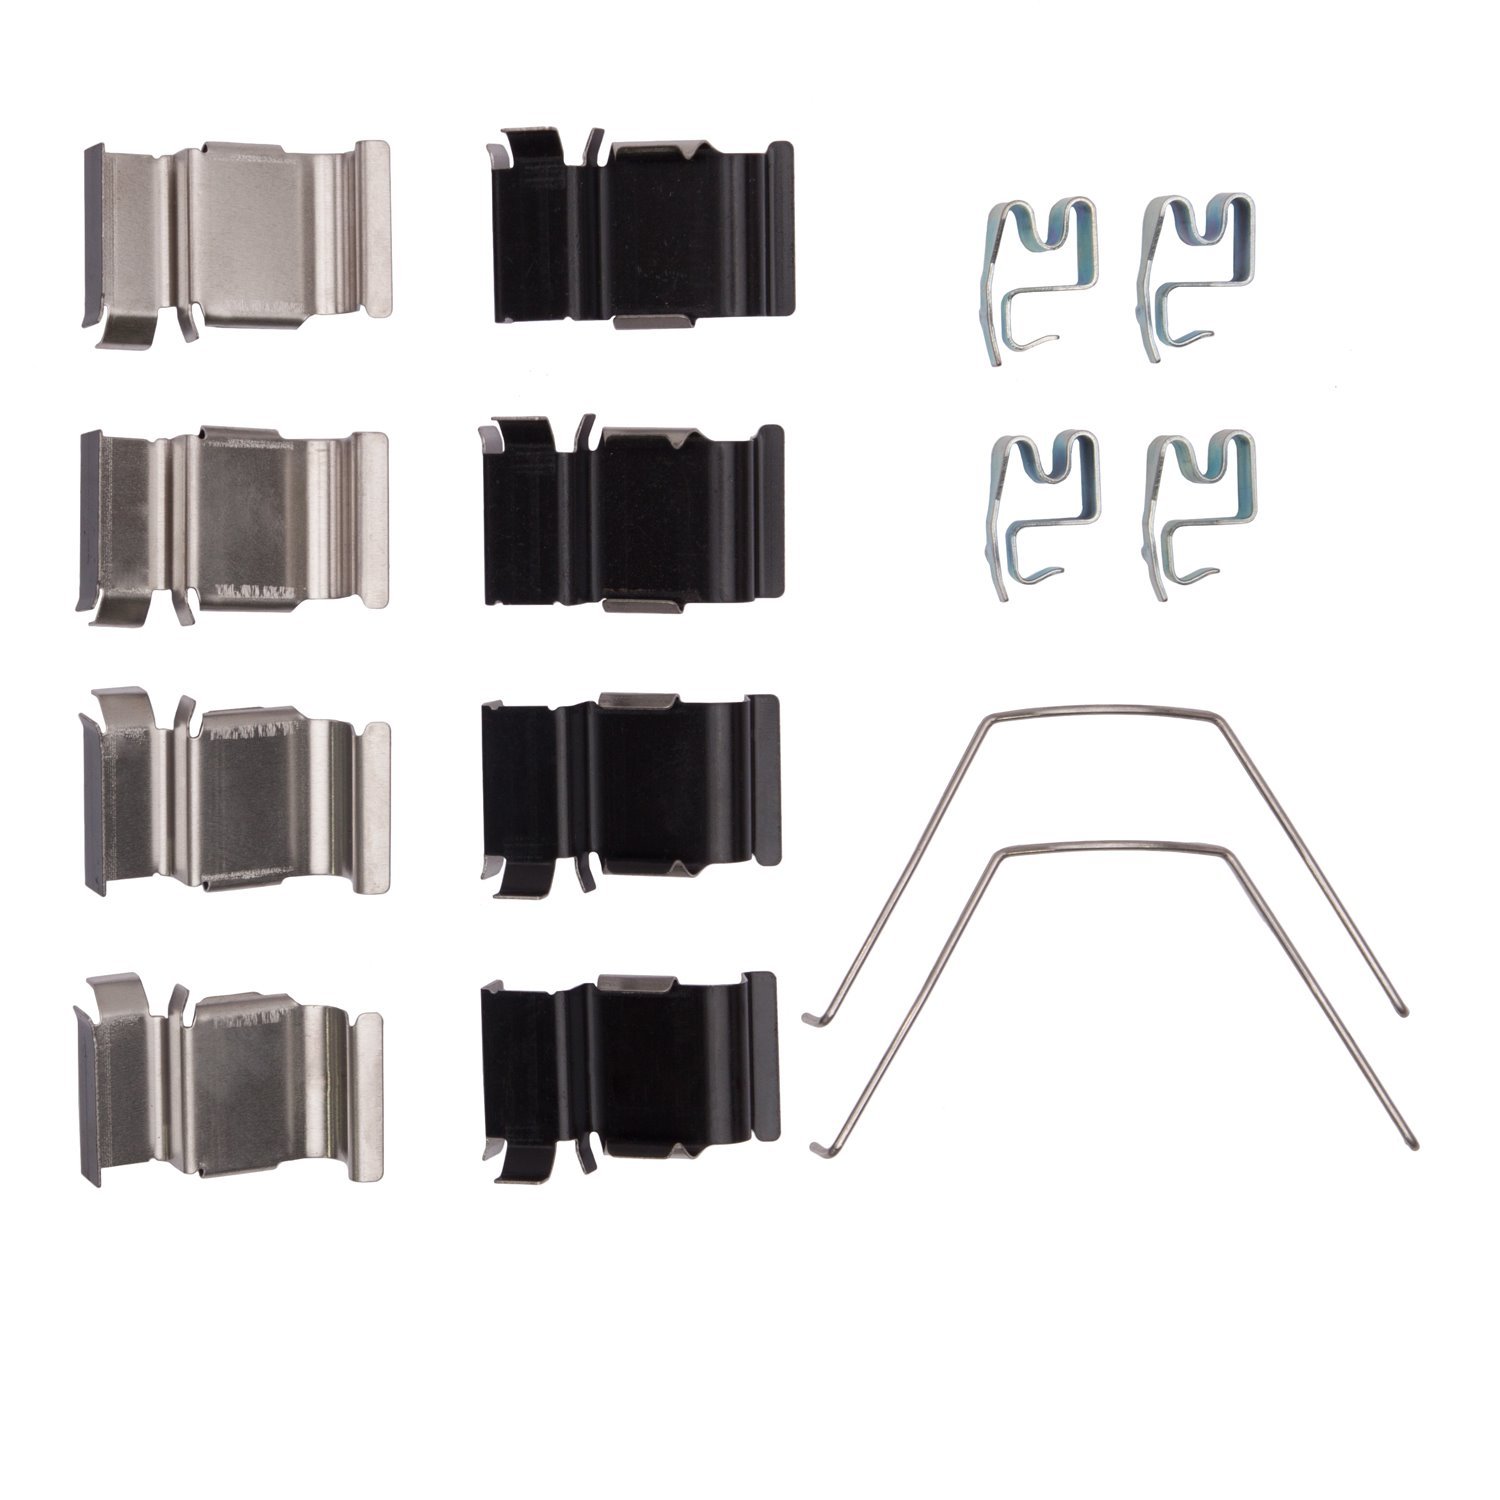 340-76079 Disc Brake Hardware Kit, Fits Select Multiple Makes/Models, Position: Rear,Front